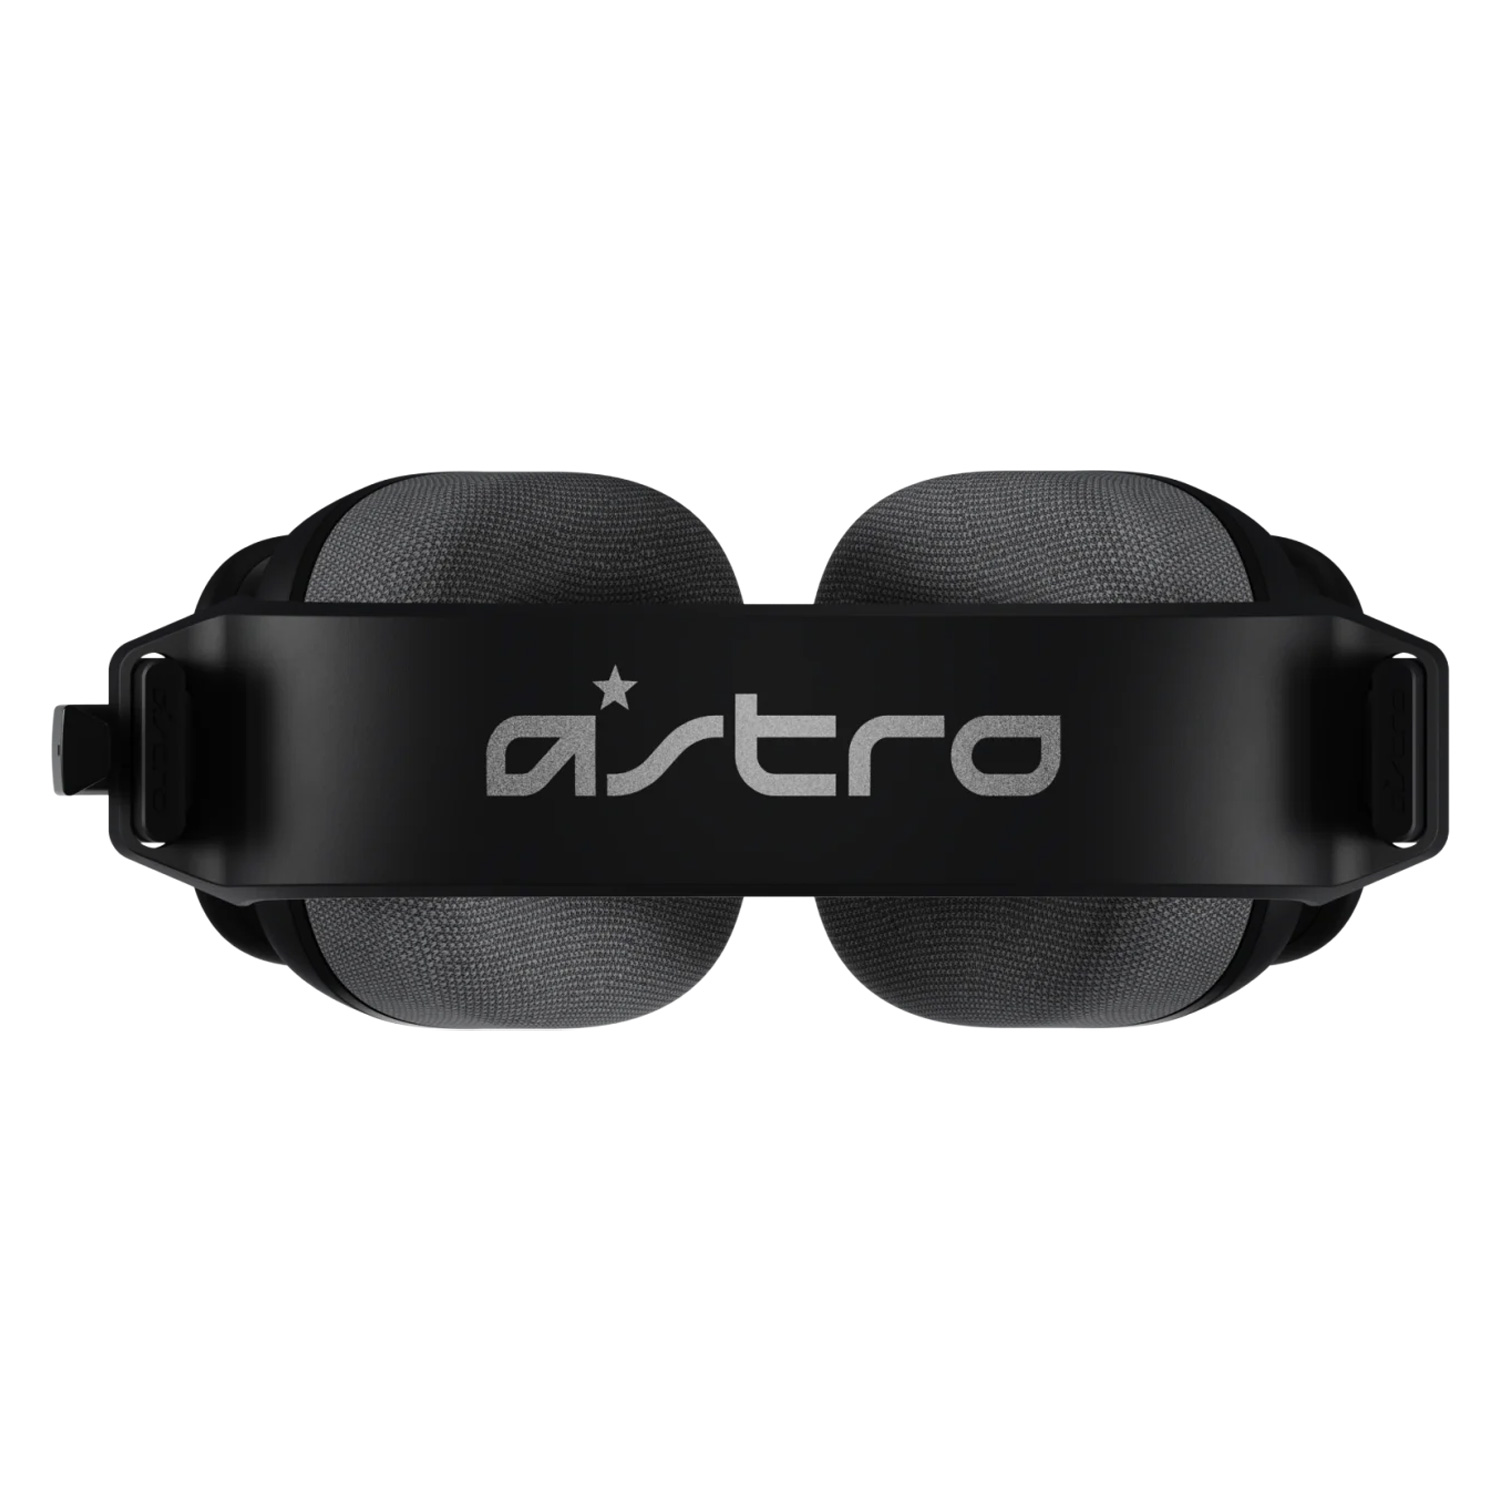 Headset Logitech Astro A10 Gen 2 - Preto (939-002056)